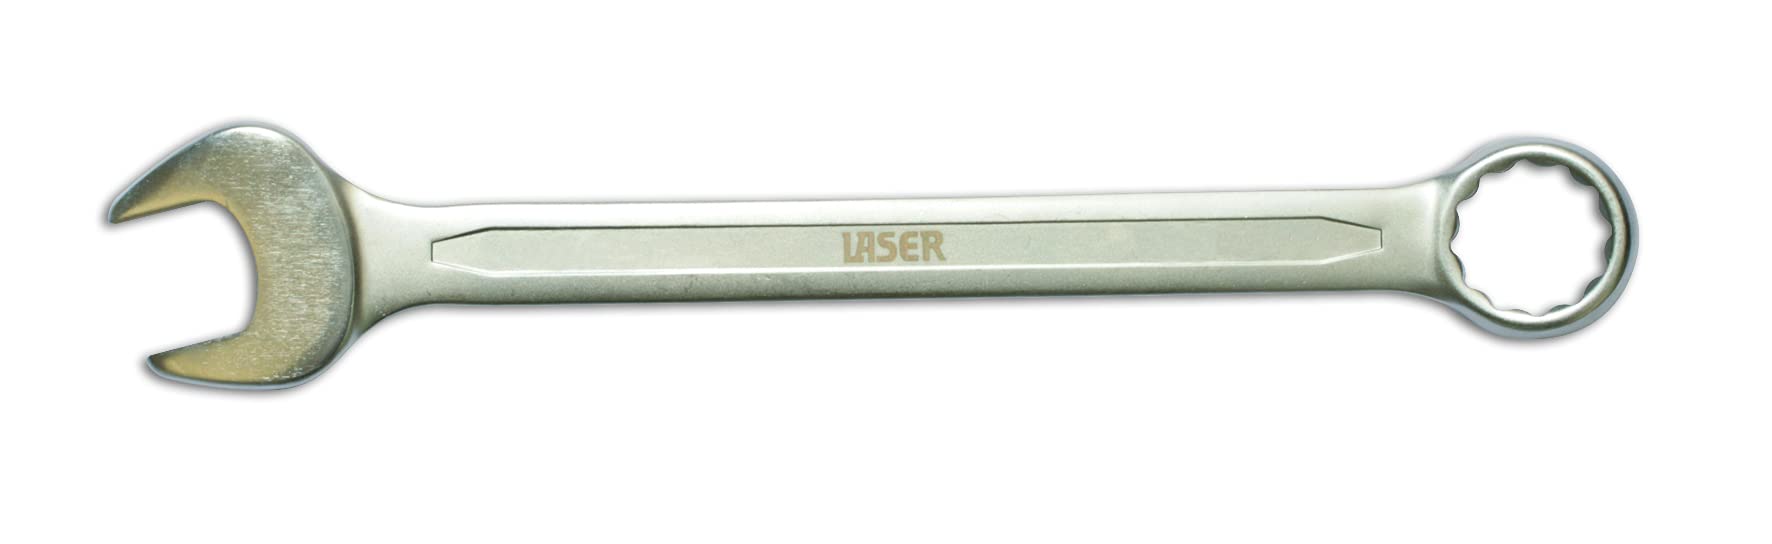 Laser 3065 3065 Kombinationsschlüssel - 17 mm von Laser